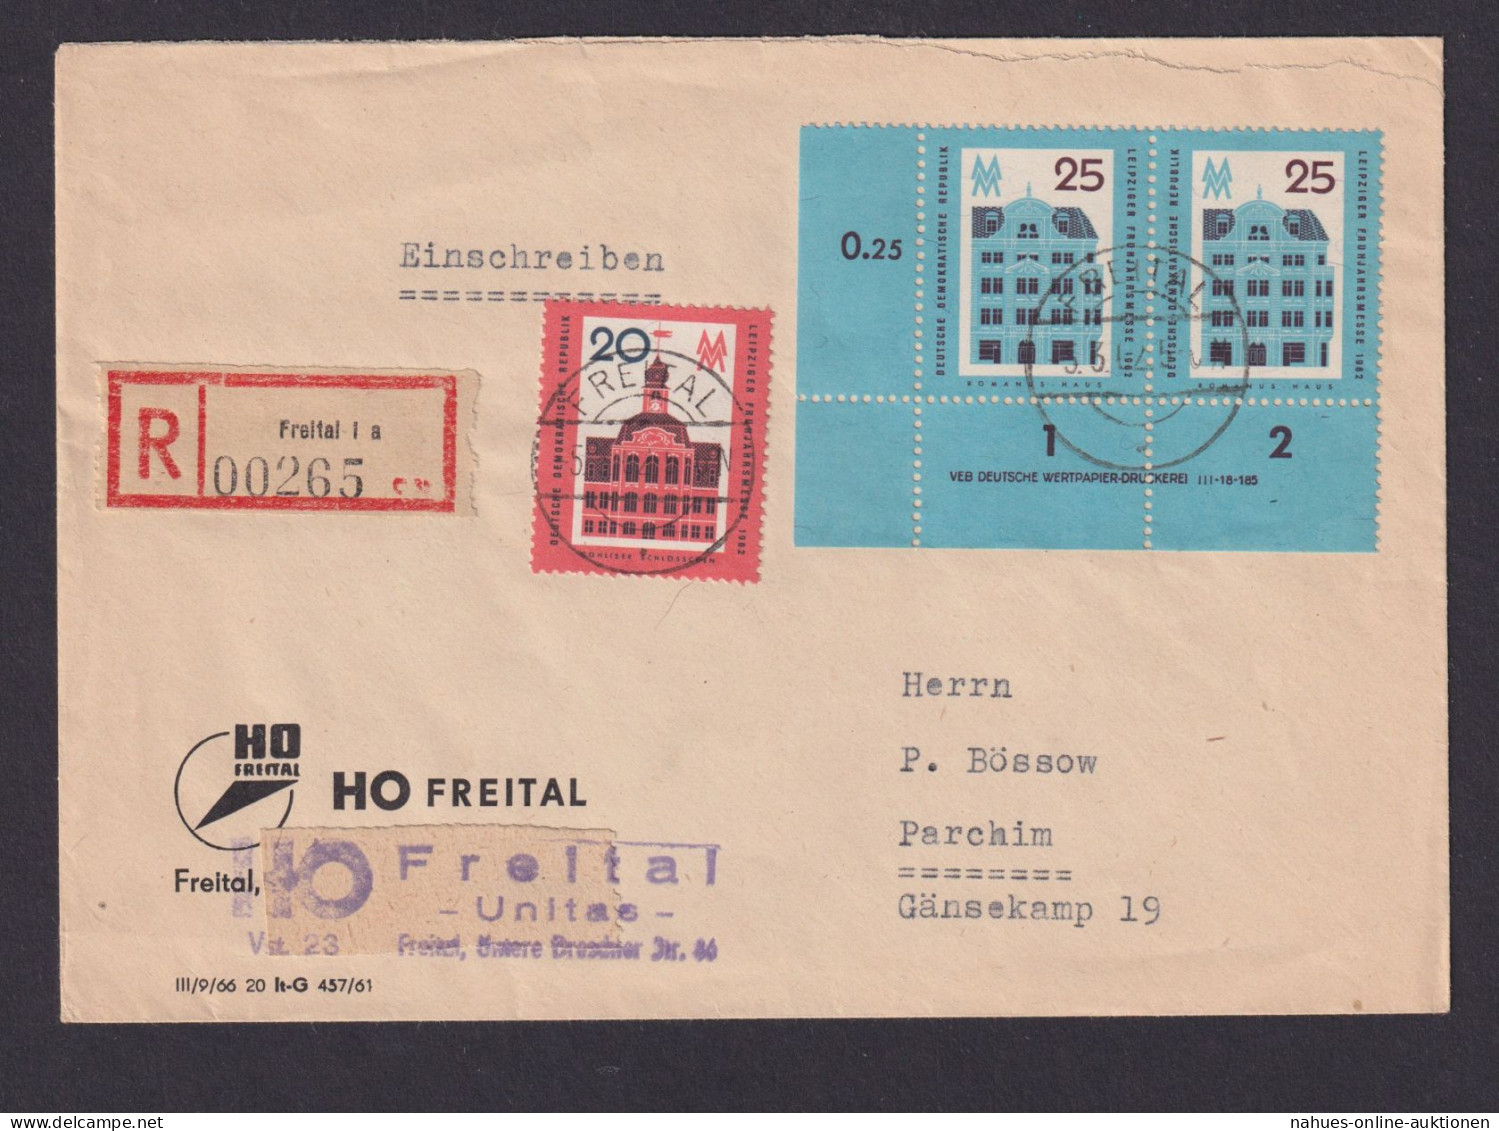 Briefmarken Druckvermerk Bogenecke Eckrand DDR R Brief MIF Freital N Parchim - Covers & Documents